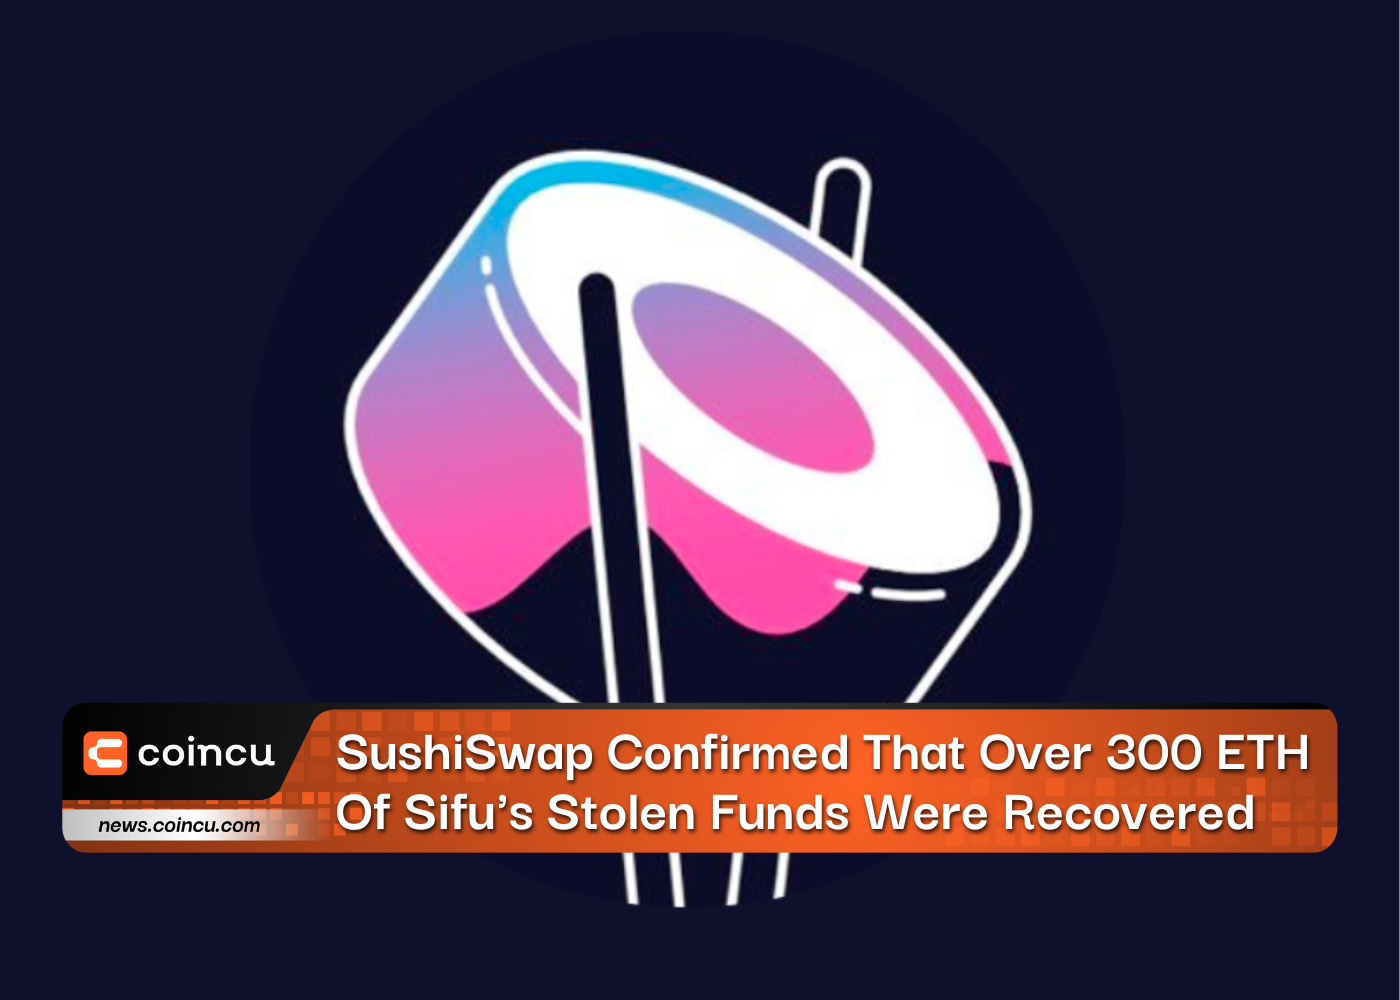 SushiSwapはSifuの盗難資金のうち300ETH以上が回収されたことを確認